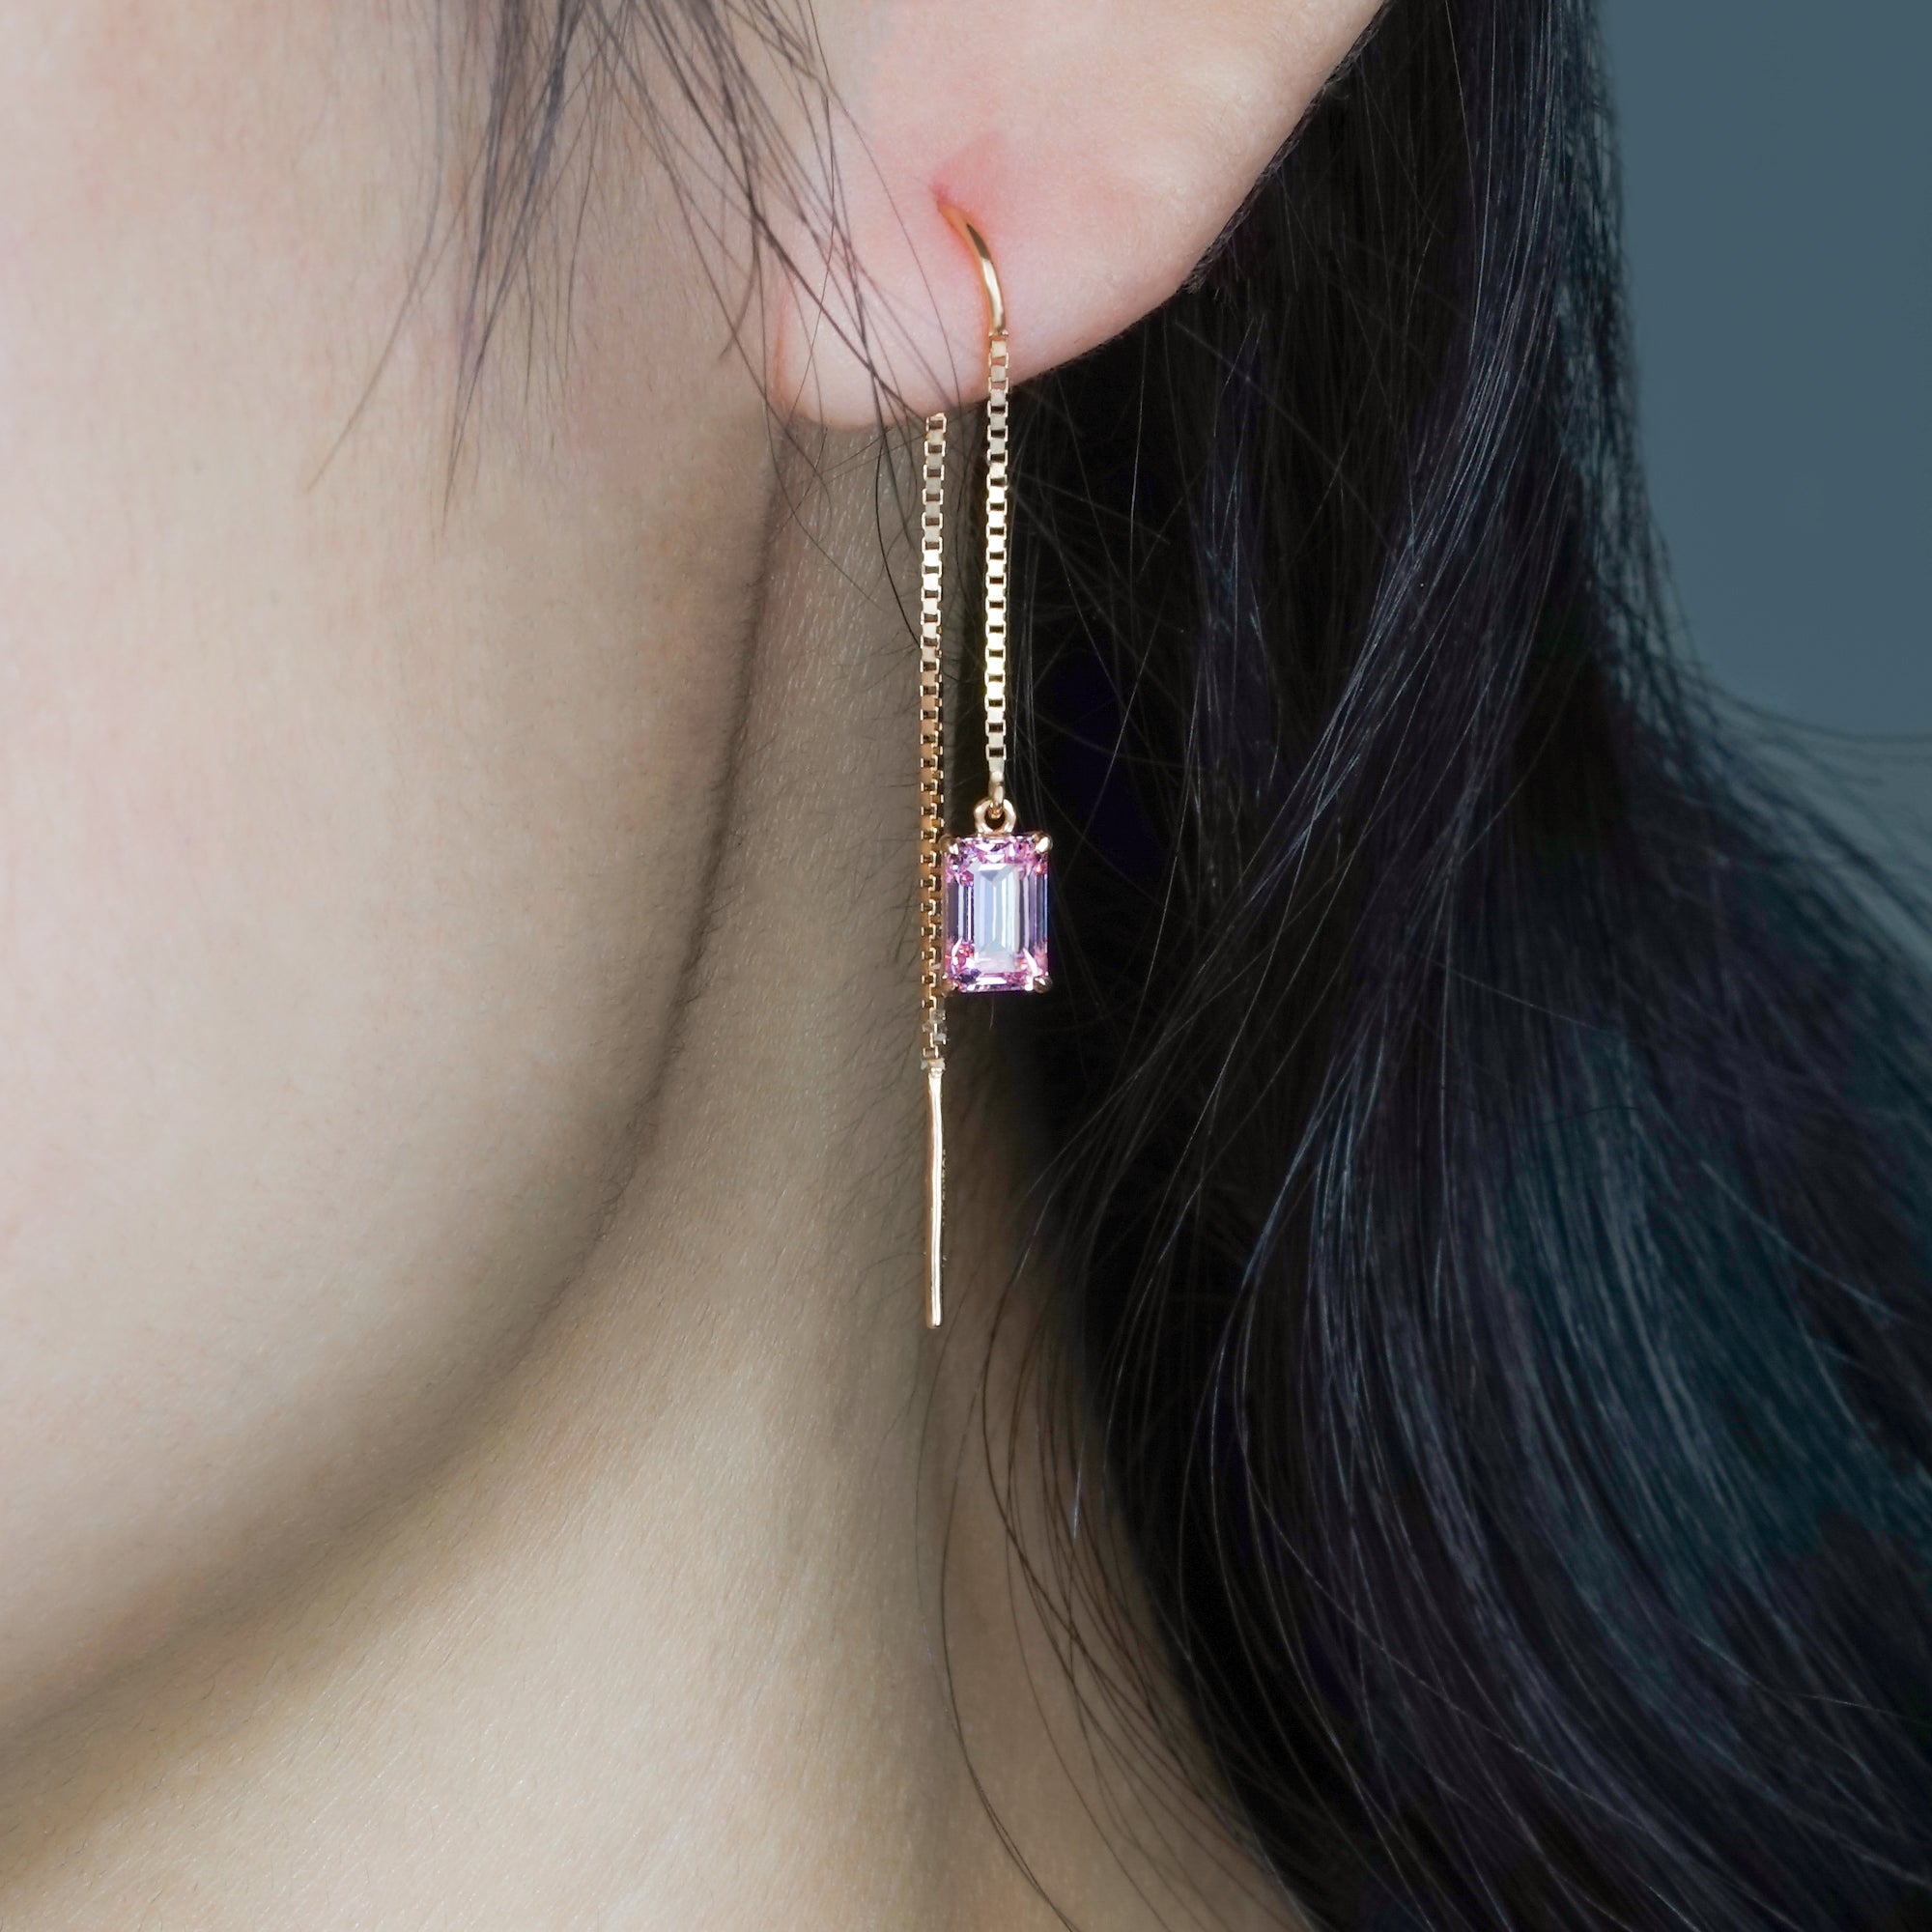 Poppy Gold Earring - Rosy Pink - Juene Jewelry